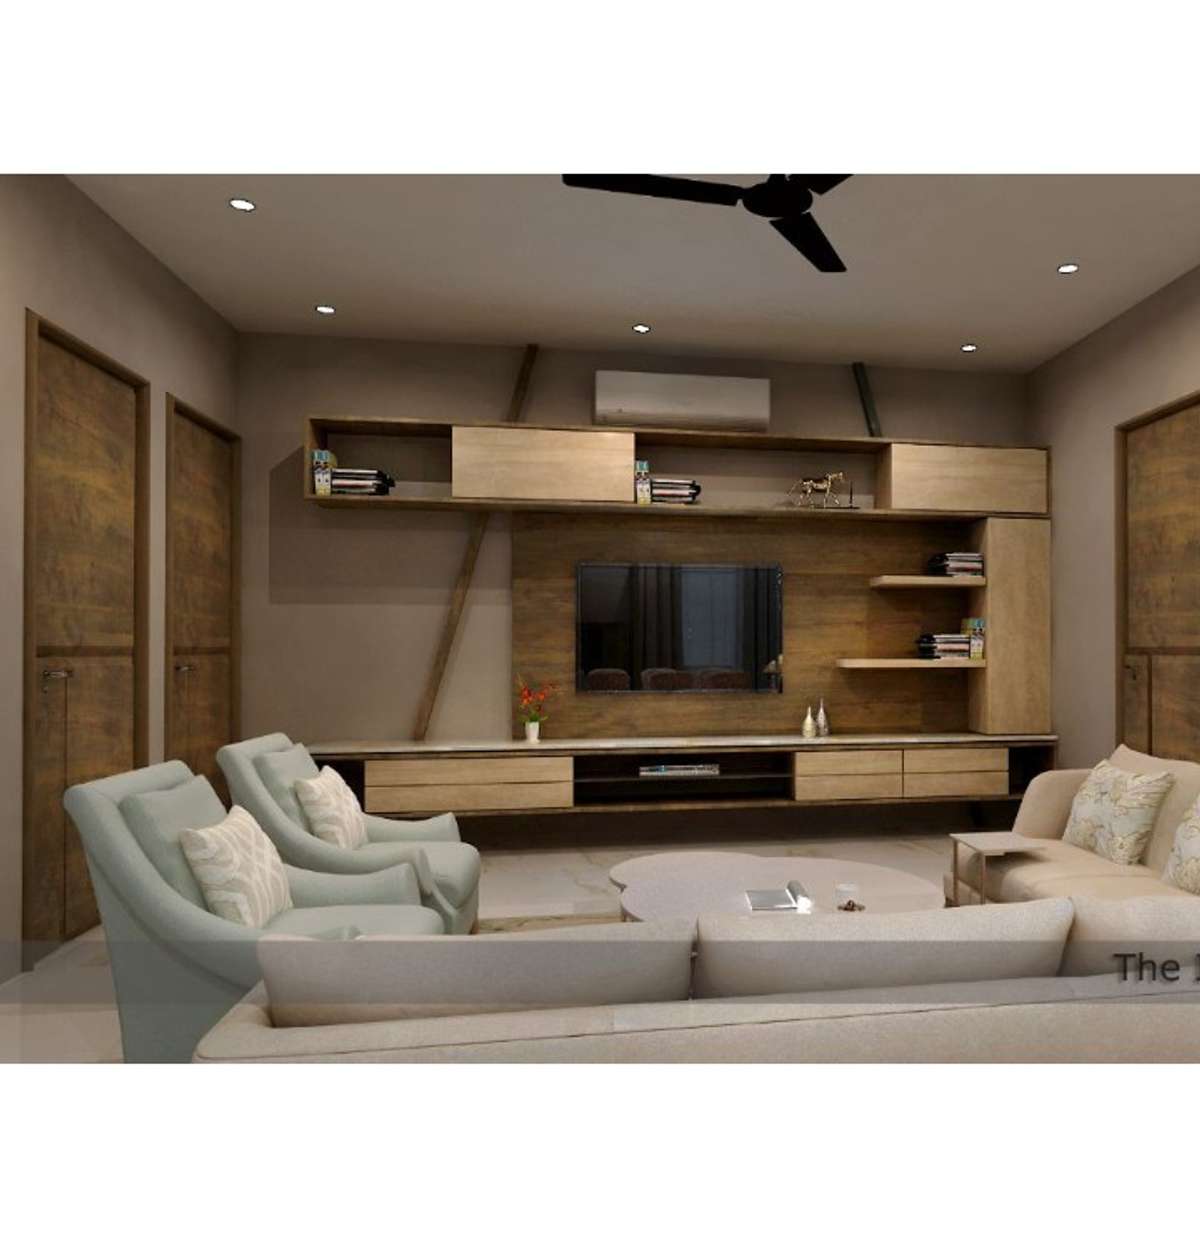 Furniture, Lighting, Living, Storage Designs by Carpenter punam chand jangid, Jaipur | Kolo